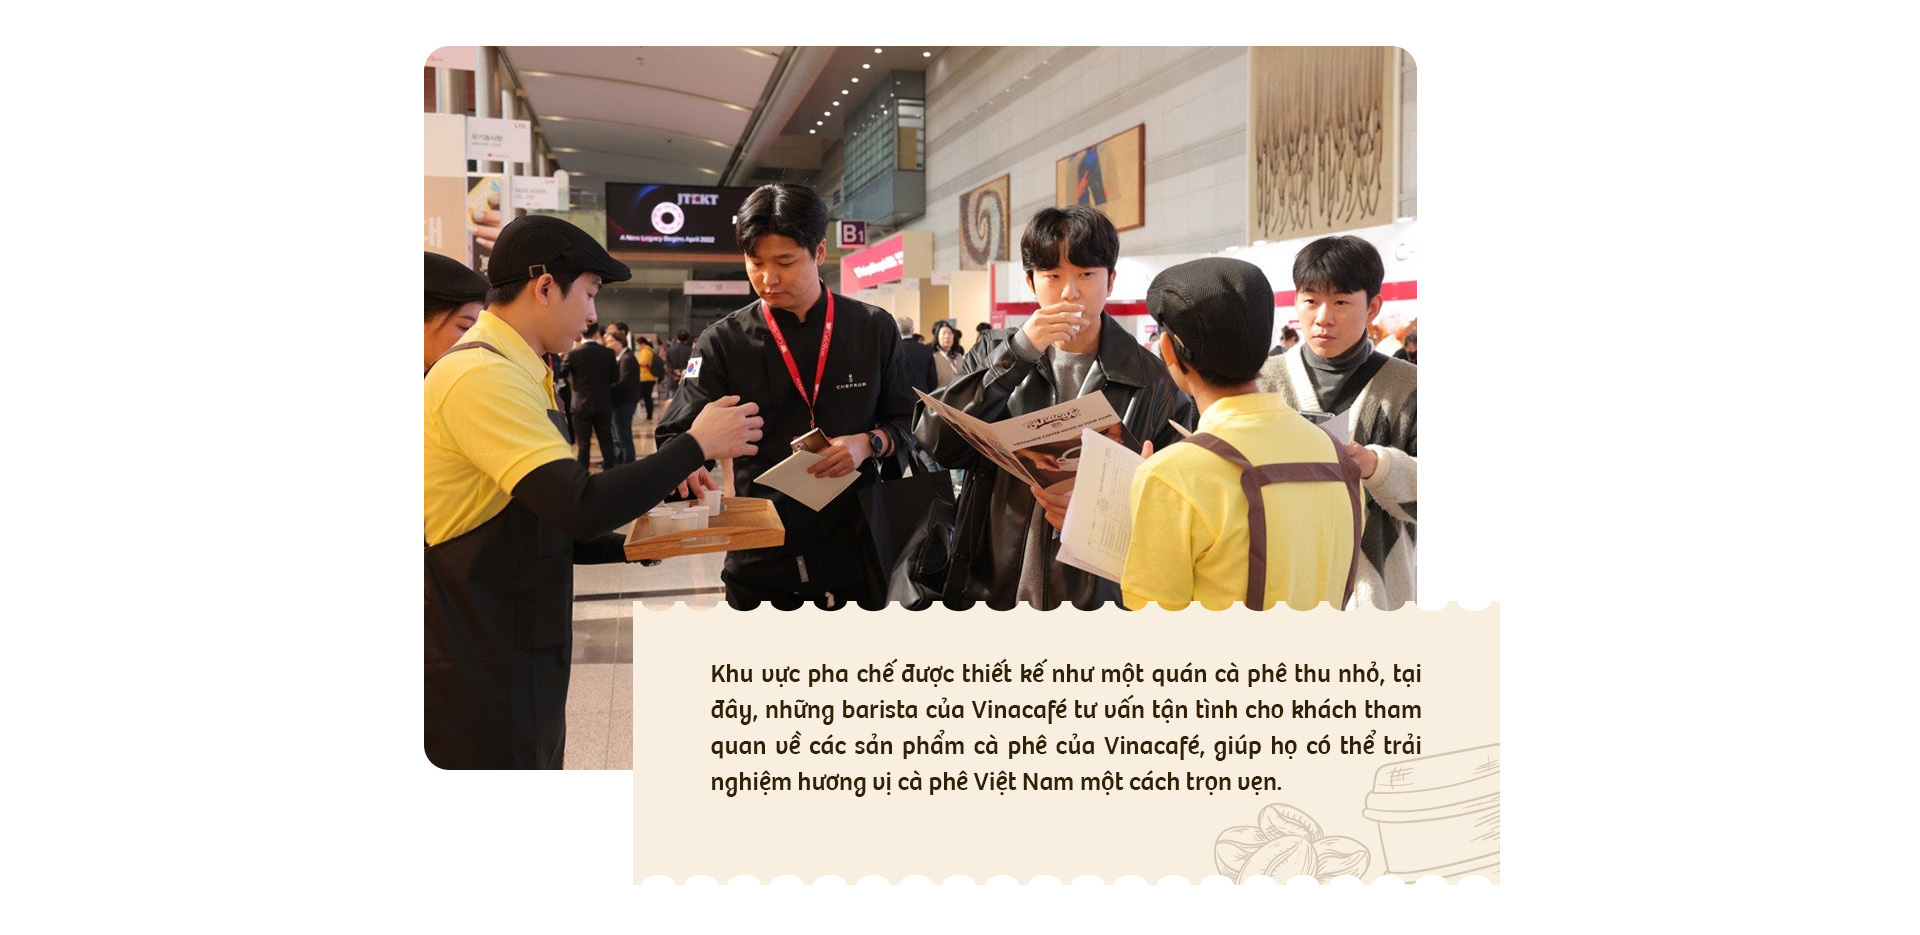 Nhìn lại hành trình ghi dấu ấn tượng tại Hàn Quốc của thương hiệu cà phê Việt Vinacafé - Ảnh 7.